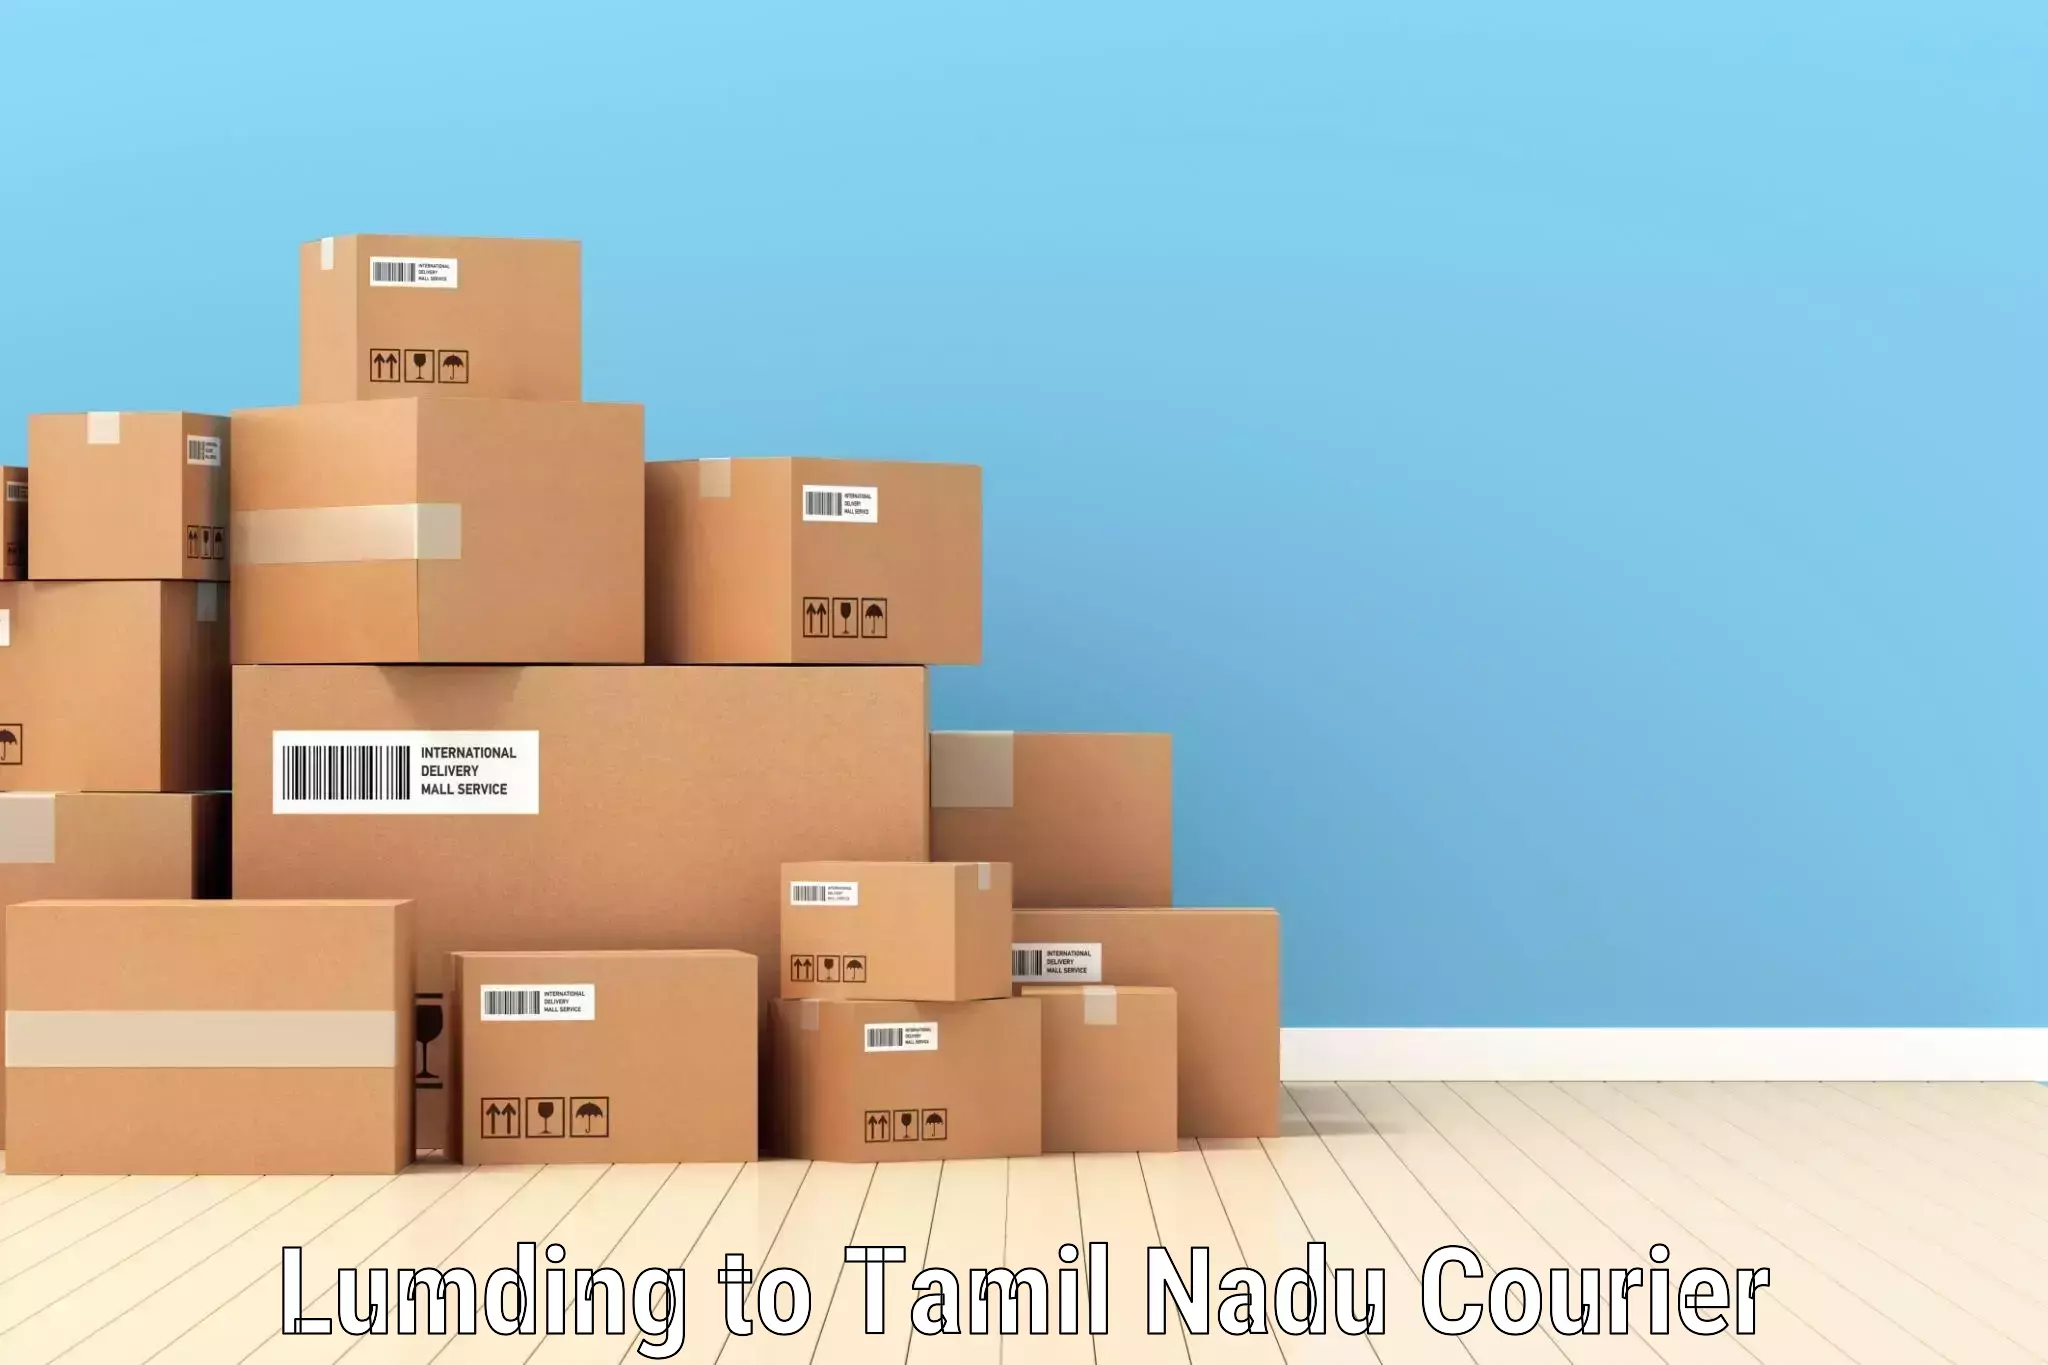 Urban courier service Lumding to Tamil Nadu